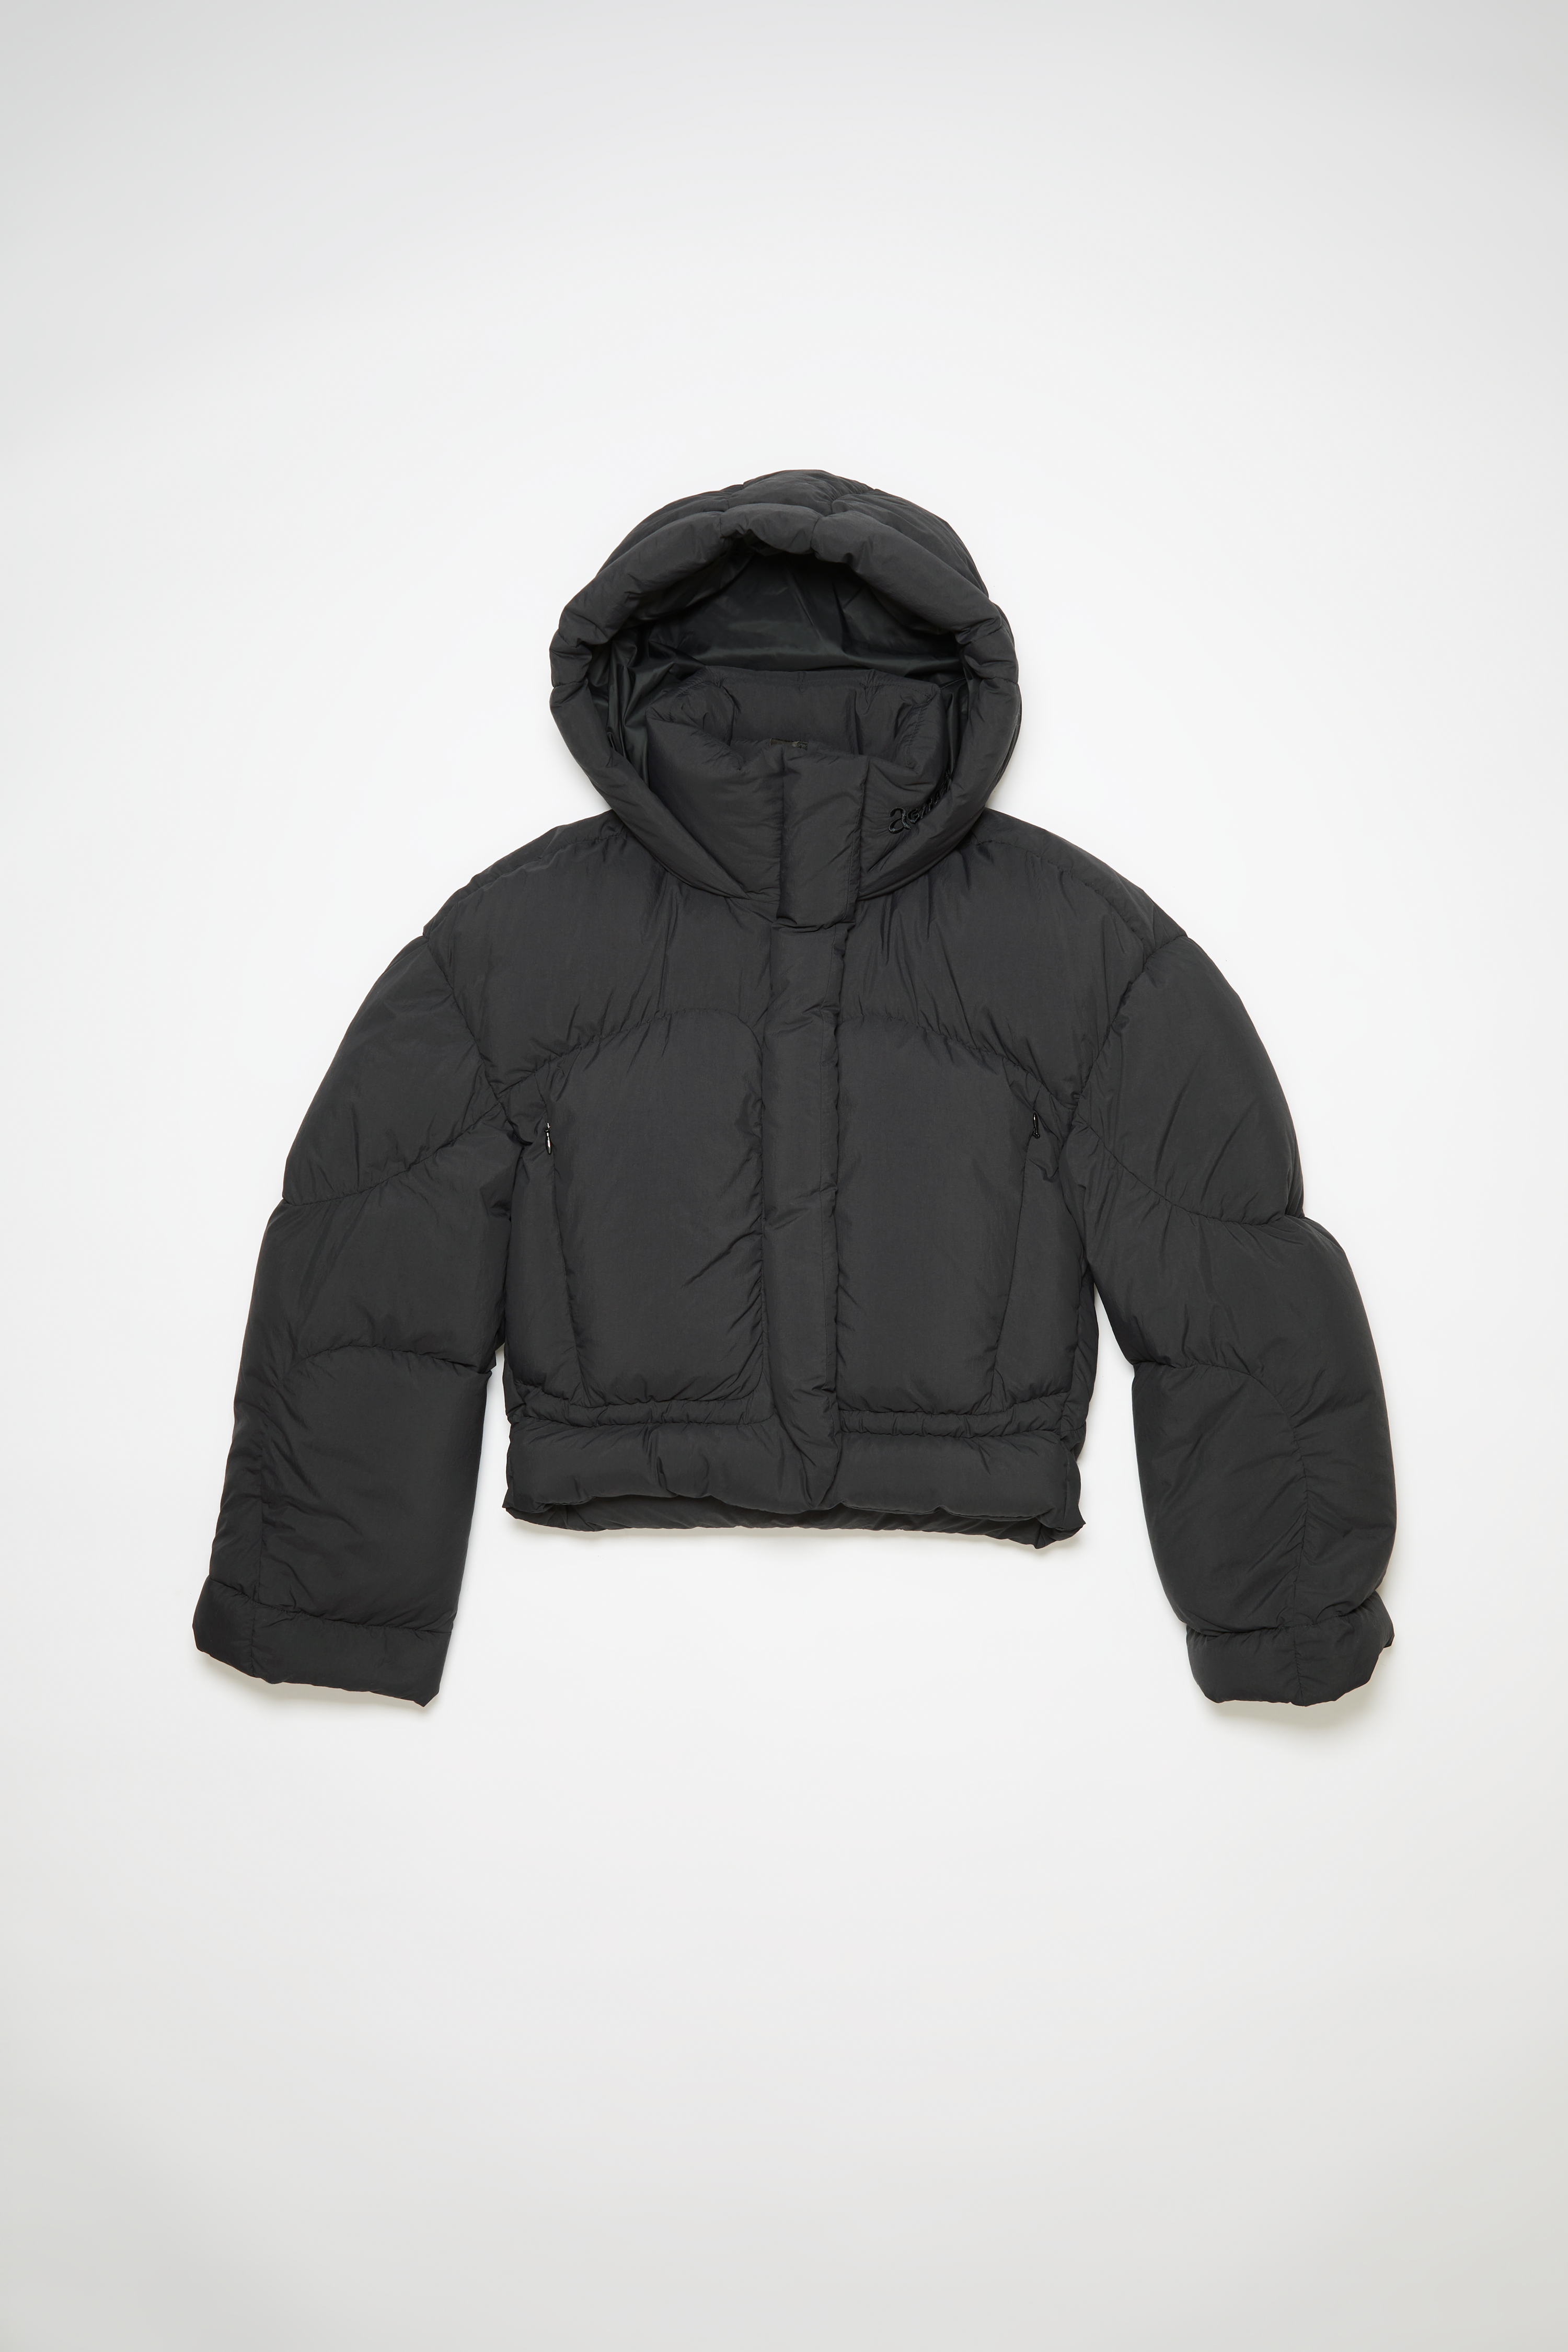 Acne Studios Hooded Puffer Jacket In Black